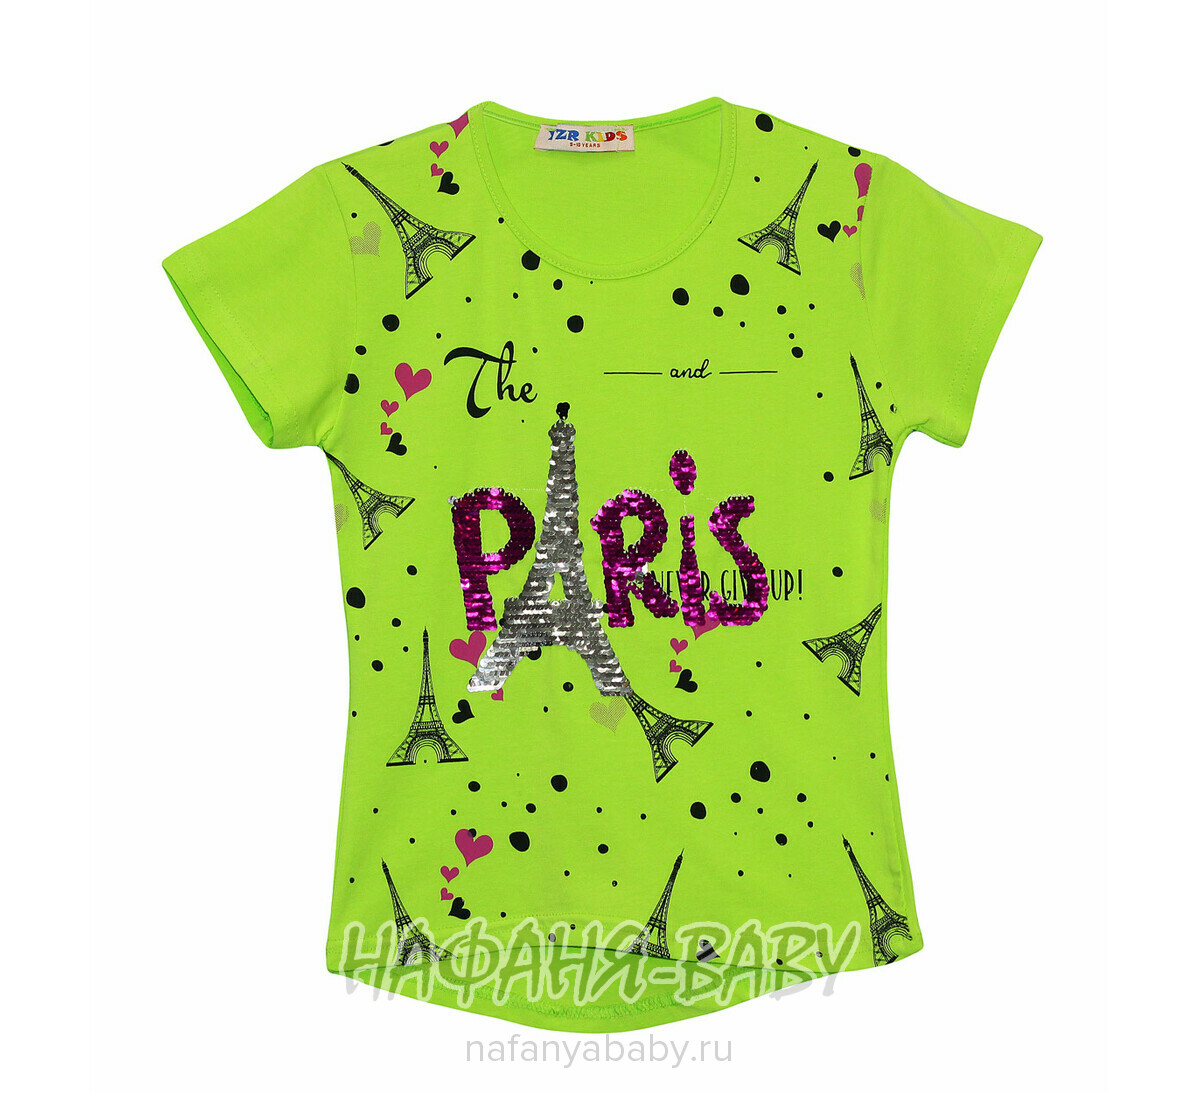 Детская футболка, артикул 2201 YZR арт: 2201, 10-15 лет, цвет персиковый, оптом Турция